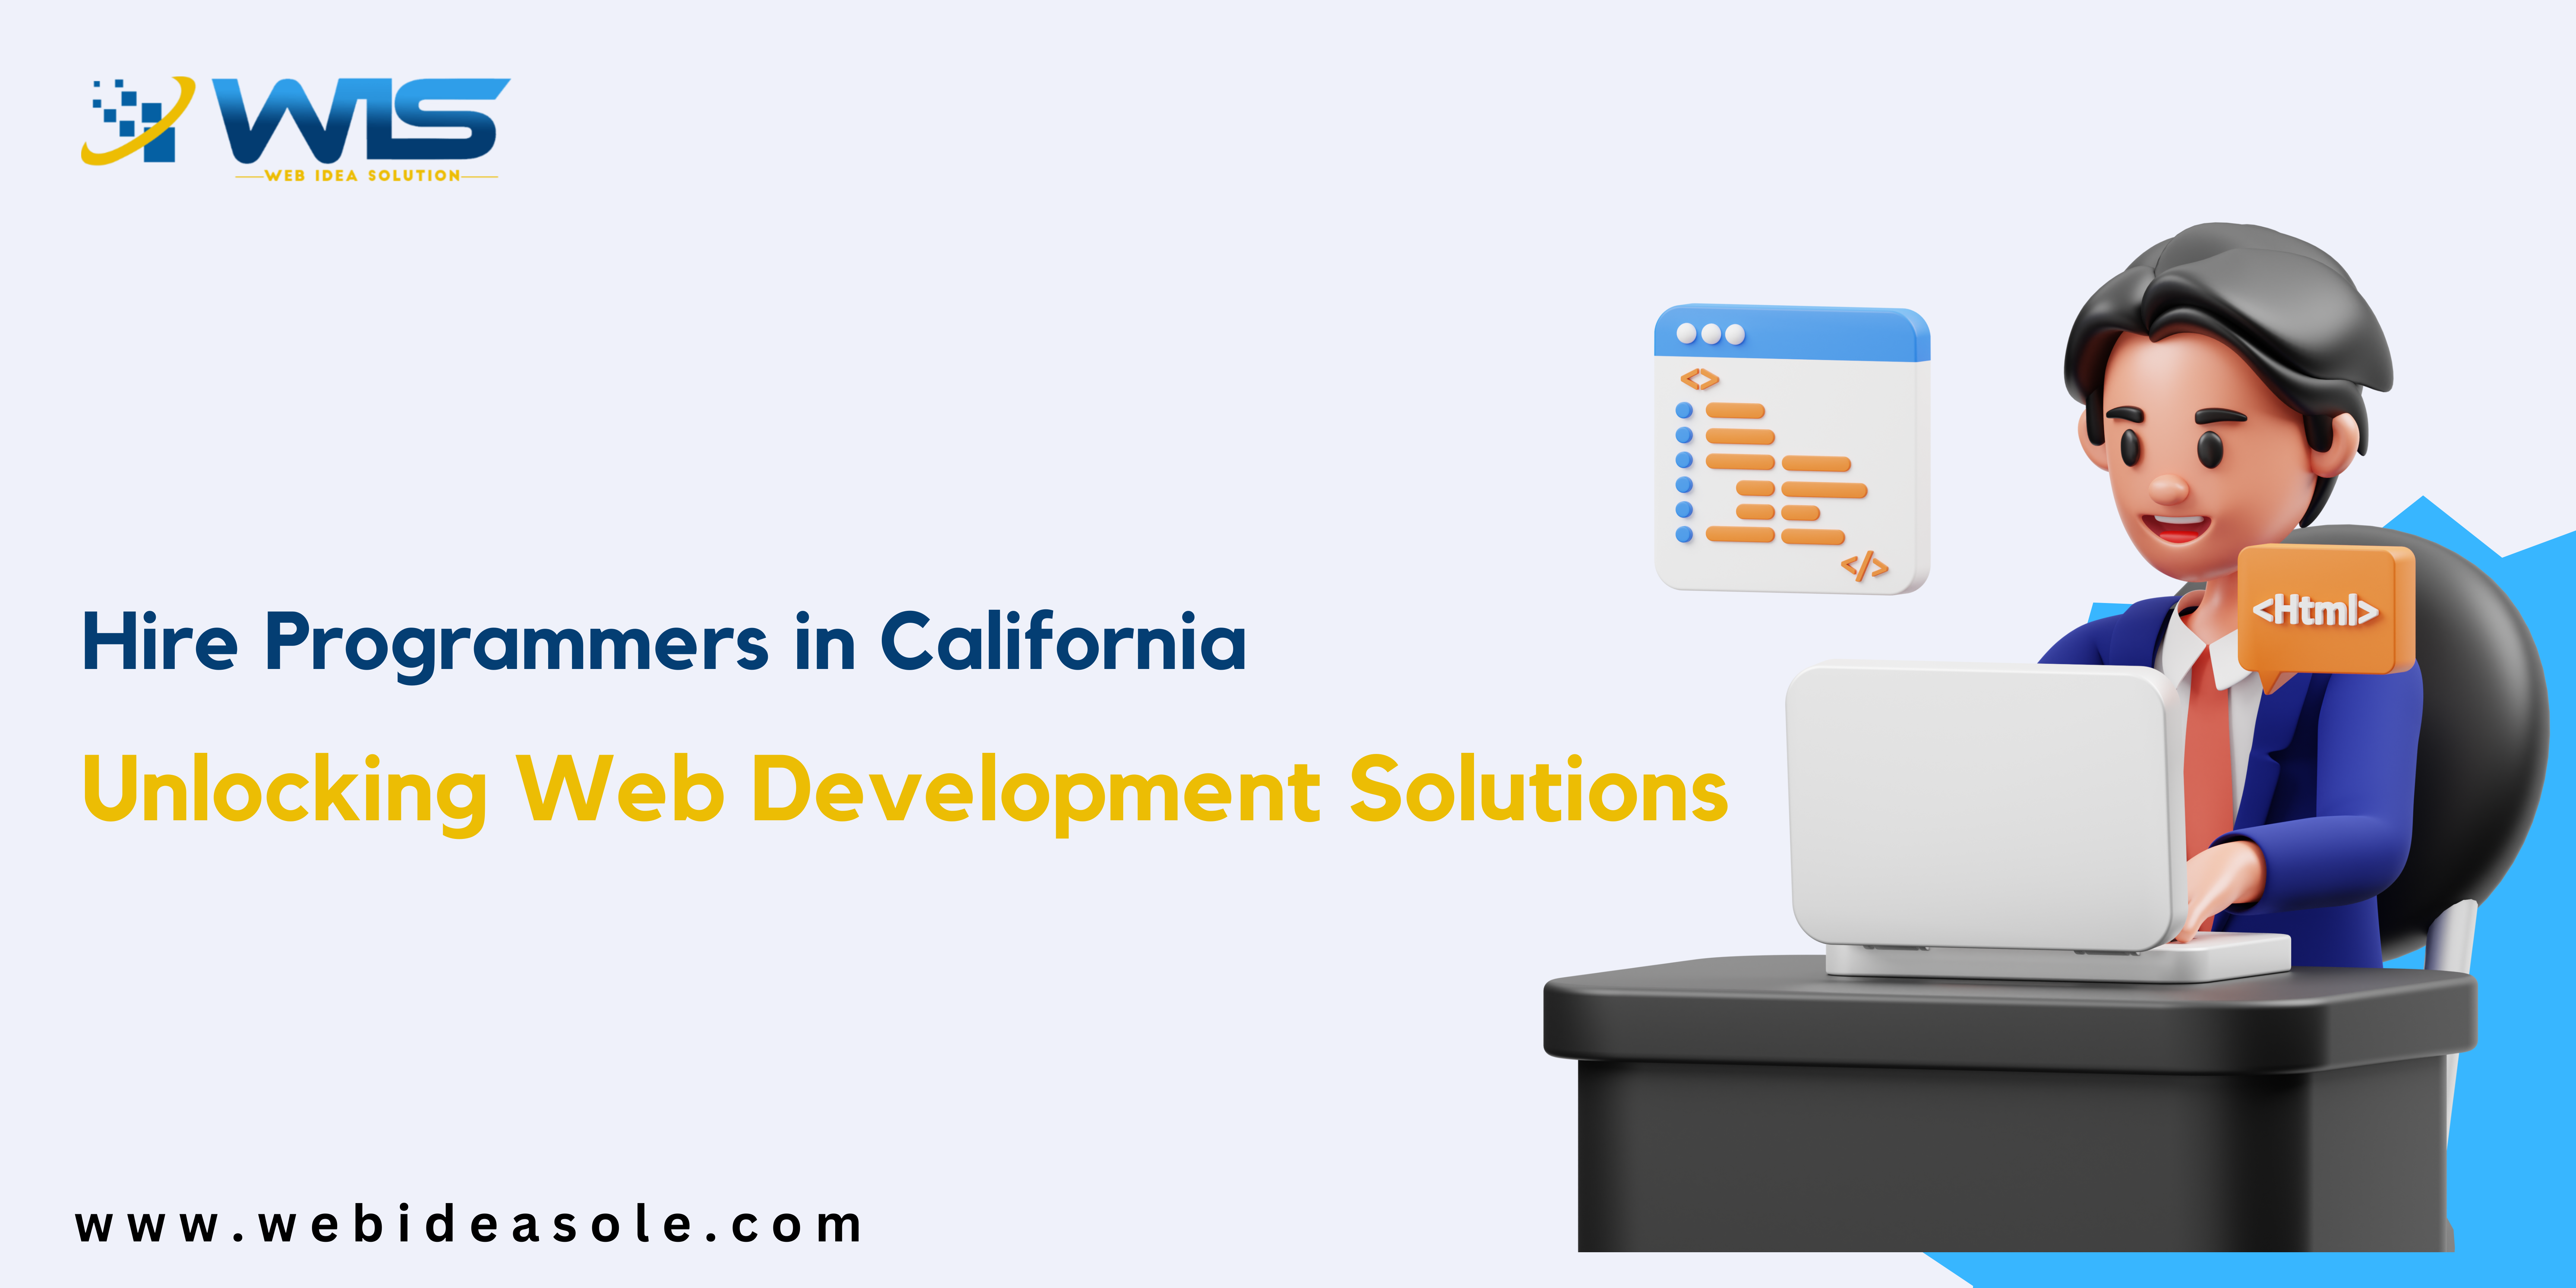 Hire Programmers in California

 

www.webideasole.com